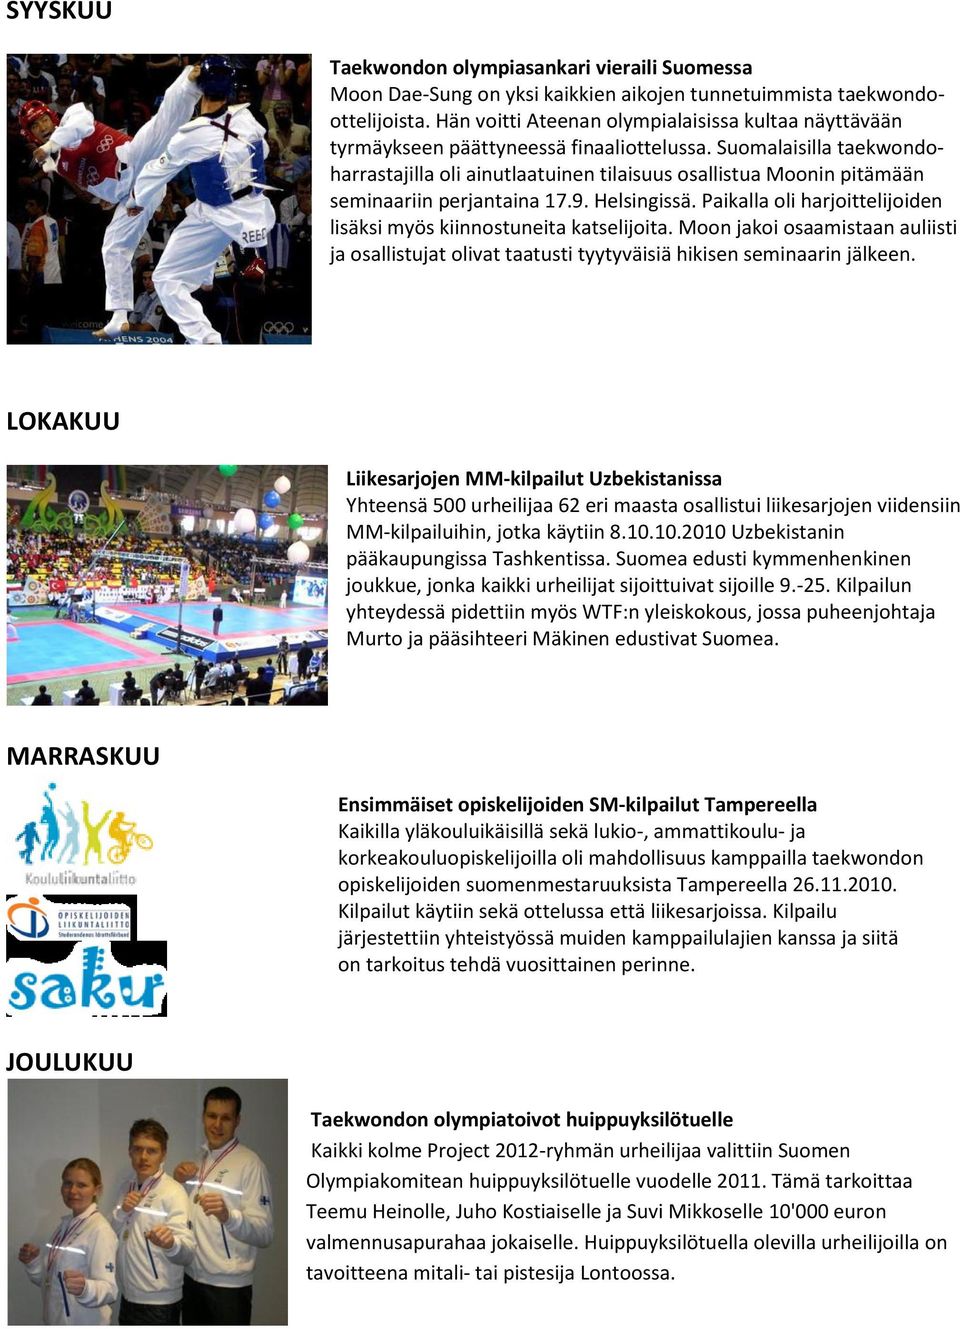 Suomalaisilla taekwondoharrastajilla oli ainutlaatuinen tilaisuus osallistua Moonin pitämään seminaariin perjantaina 17.9. Helsingissä.